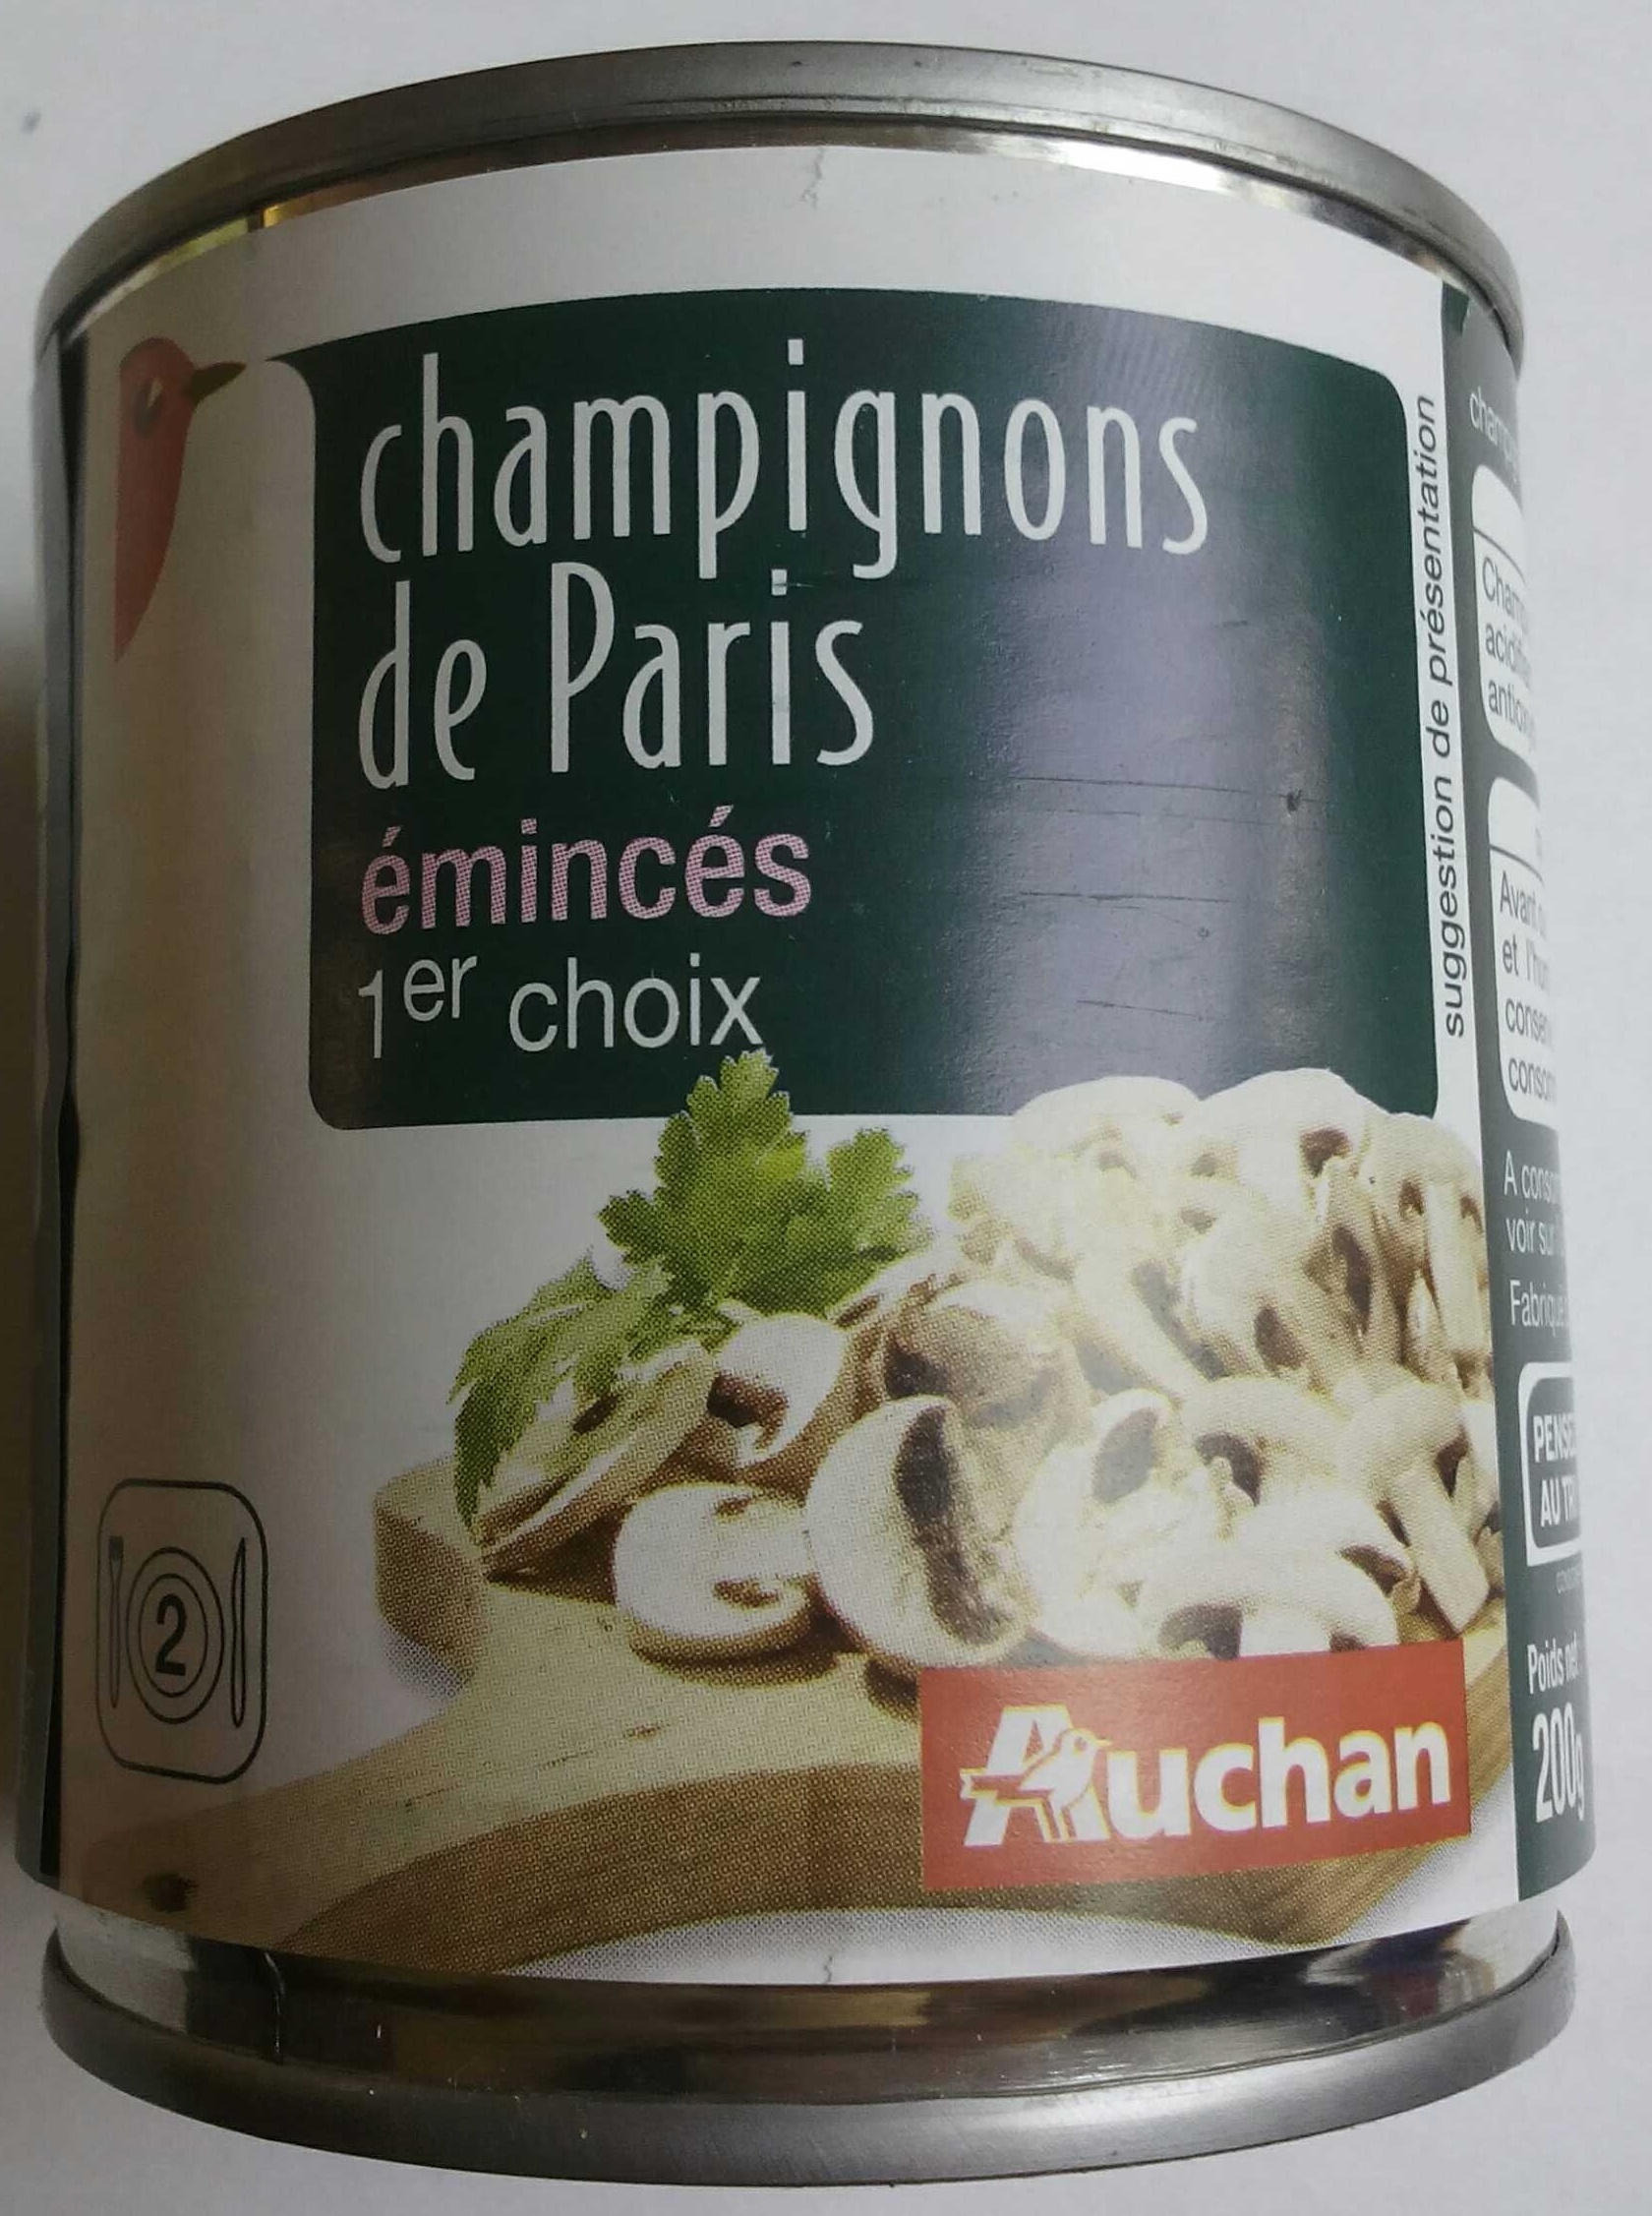 Champignons de Paris émincés 1er choix - Product - fr